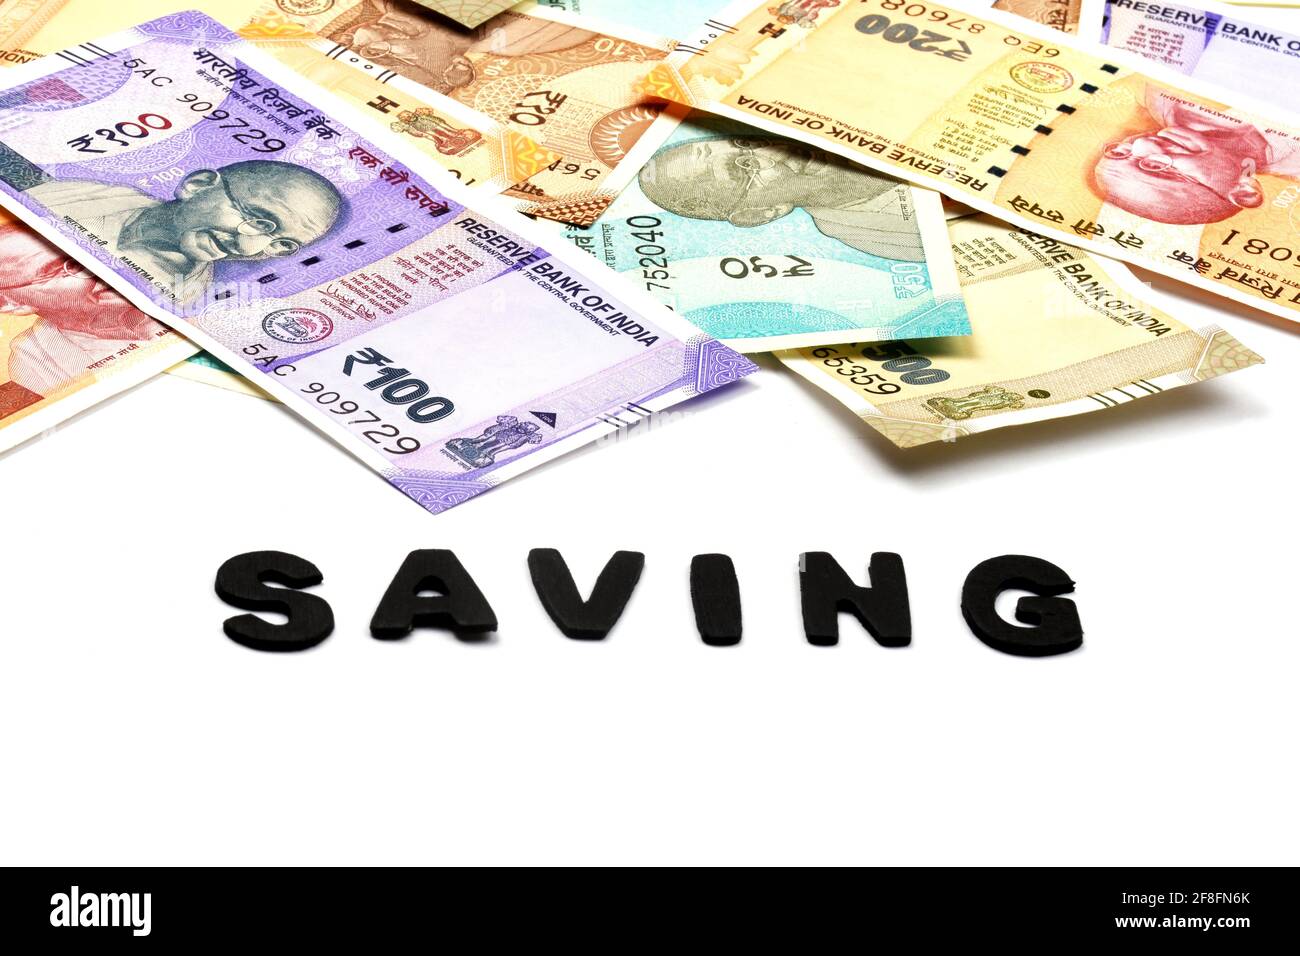 Concetto di risparmio di denaro, alfabeto di risparmio in background denaro, valuta indiana, rupia, rupia indiana, denaro indiano, Affari, finanza, investimenti, Foto Stock